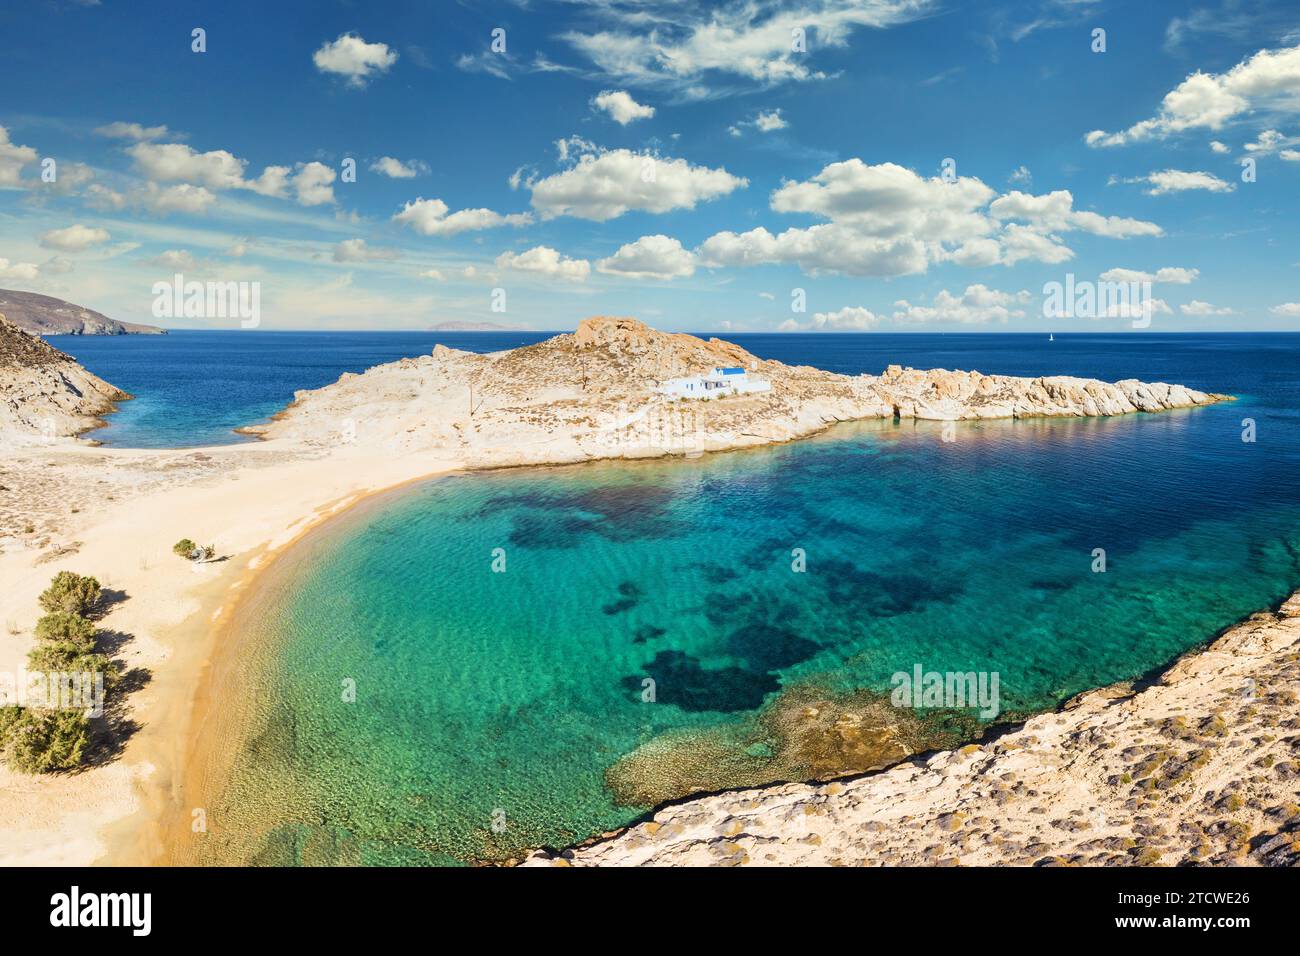 La plage de sable Agios Sostis avec la chapelle homonyme de l'île de Serifos dans les Cyclades, Grèce Banque D'Images